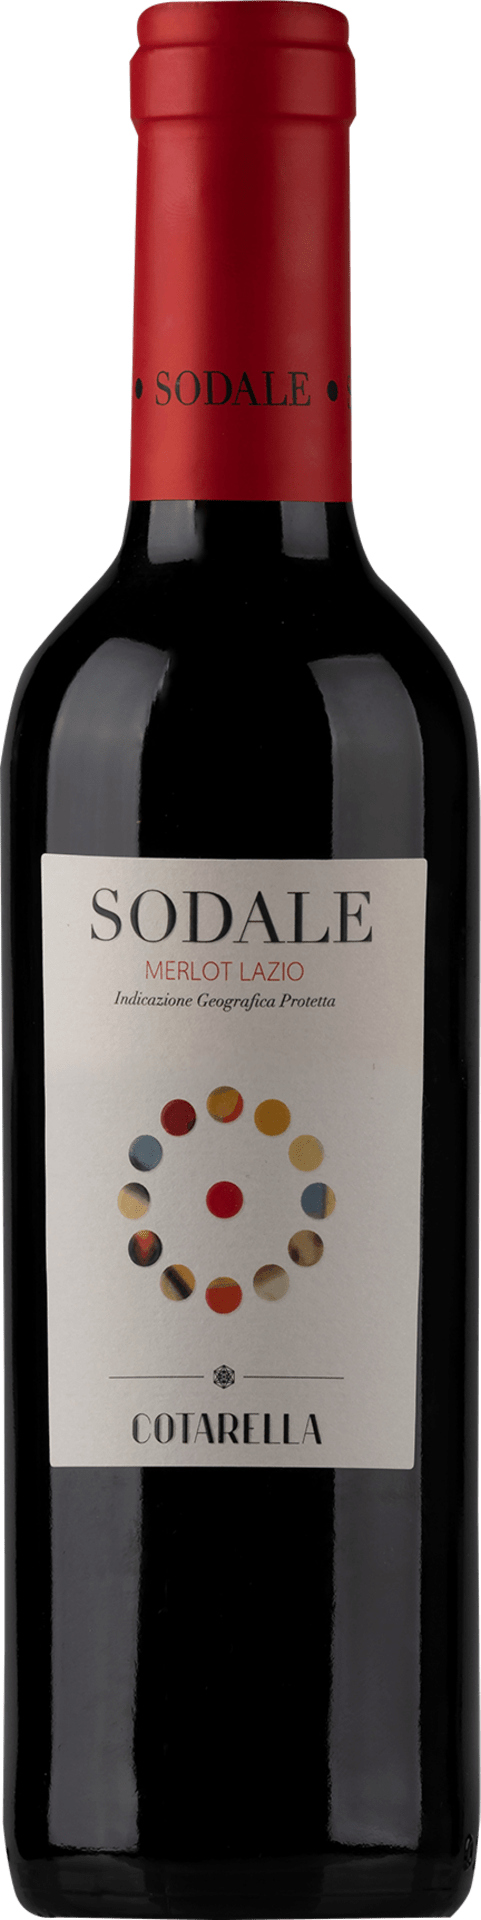 Sodale Lazio IGP halbe Flasche